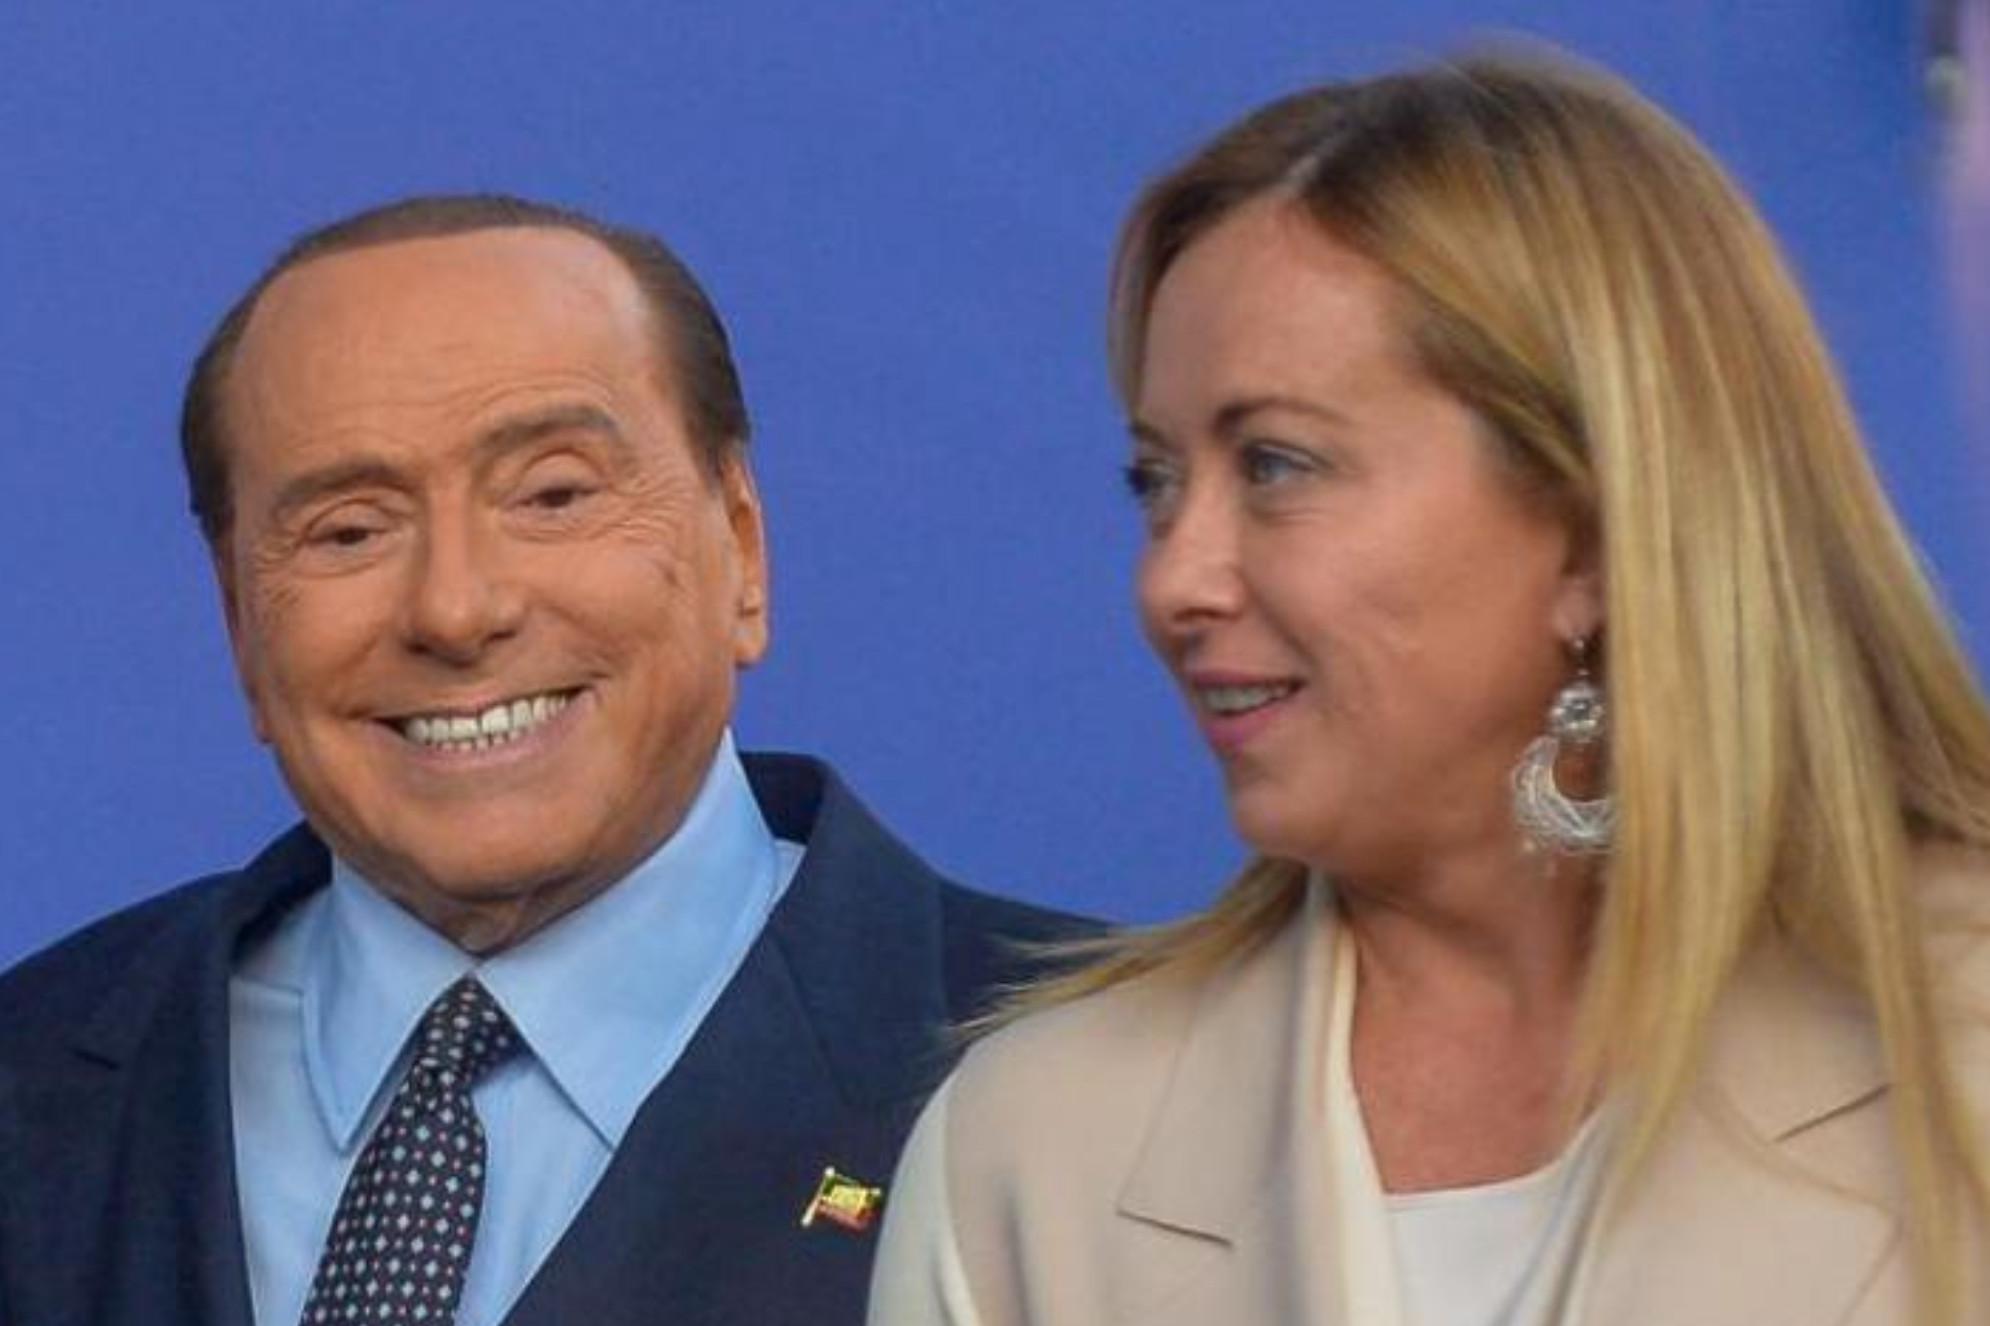 Governo Meloni, la 'mappa': i ministri di Forza Italia e Lega